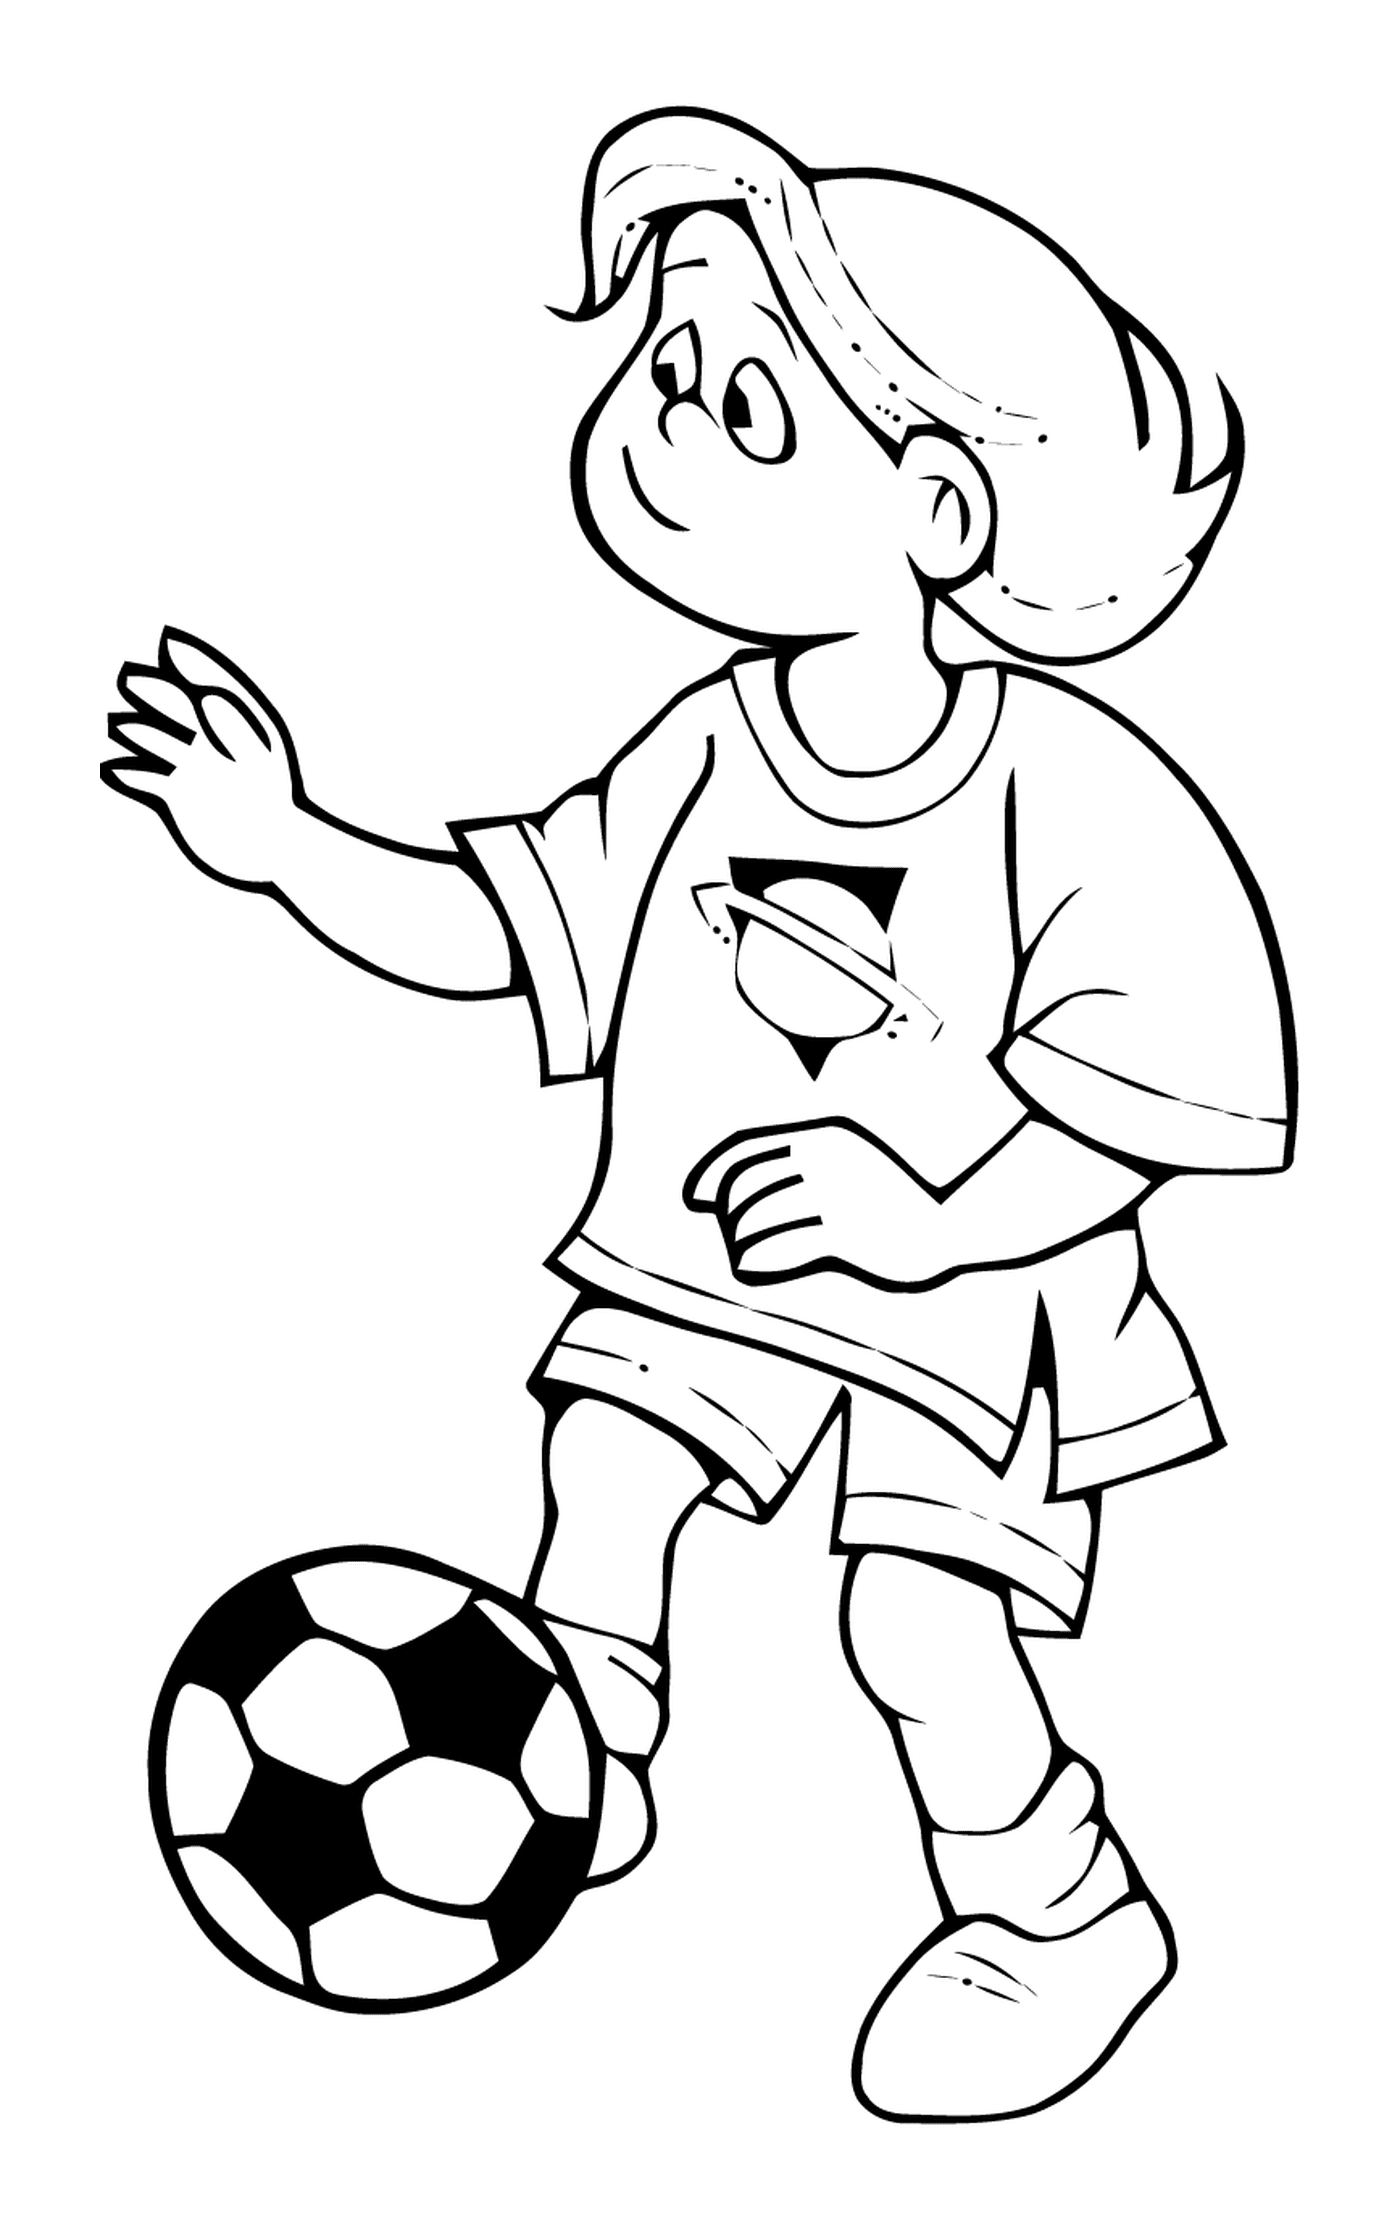   Sport, jouer au foot 